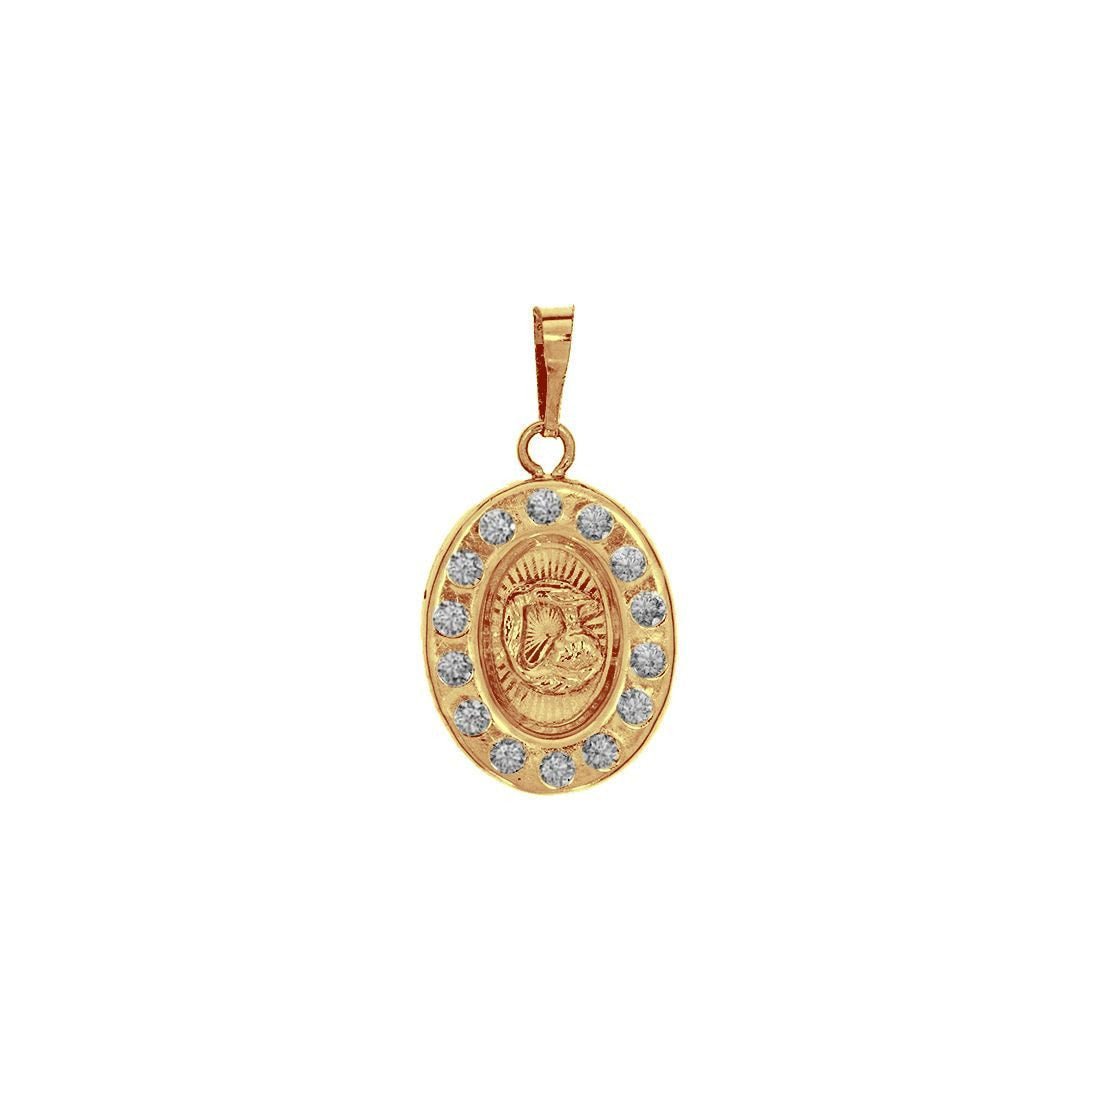 Medalla Oval Bautizo con Zirconias, 2 cm alto, Largo 1cm, Oro 10k - Infiniti Joyas